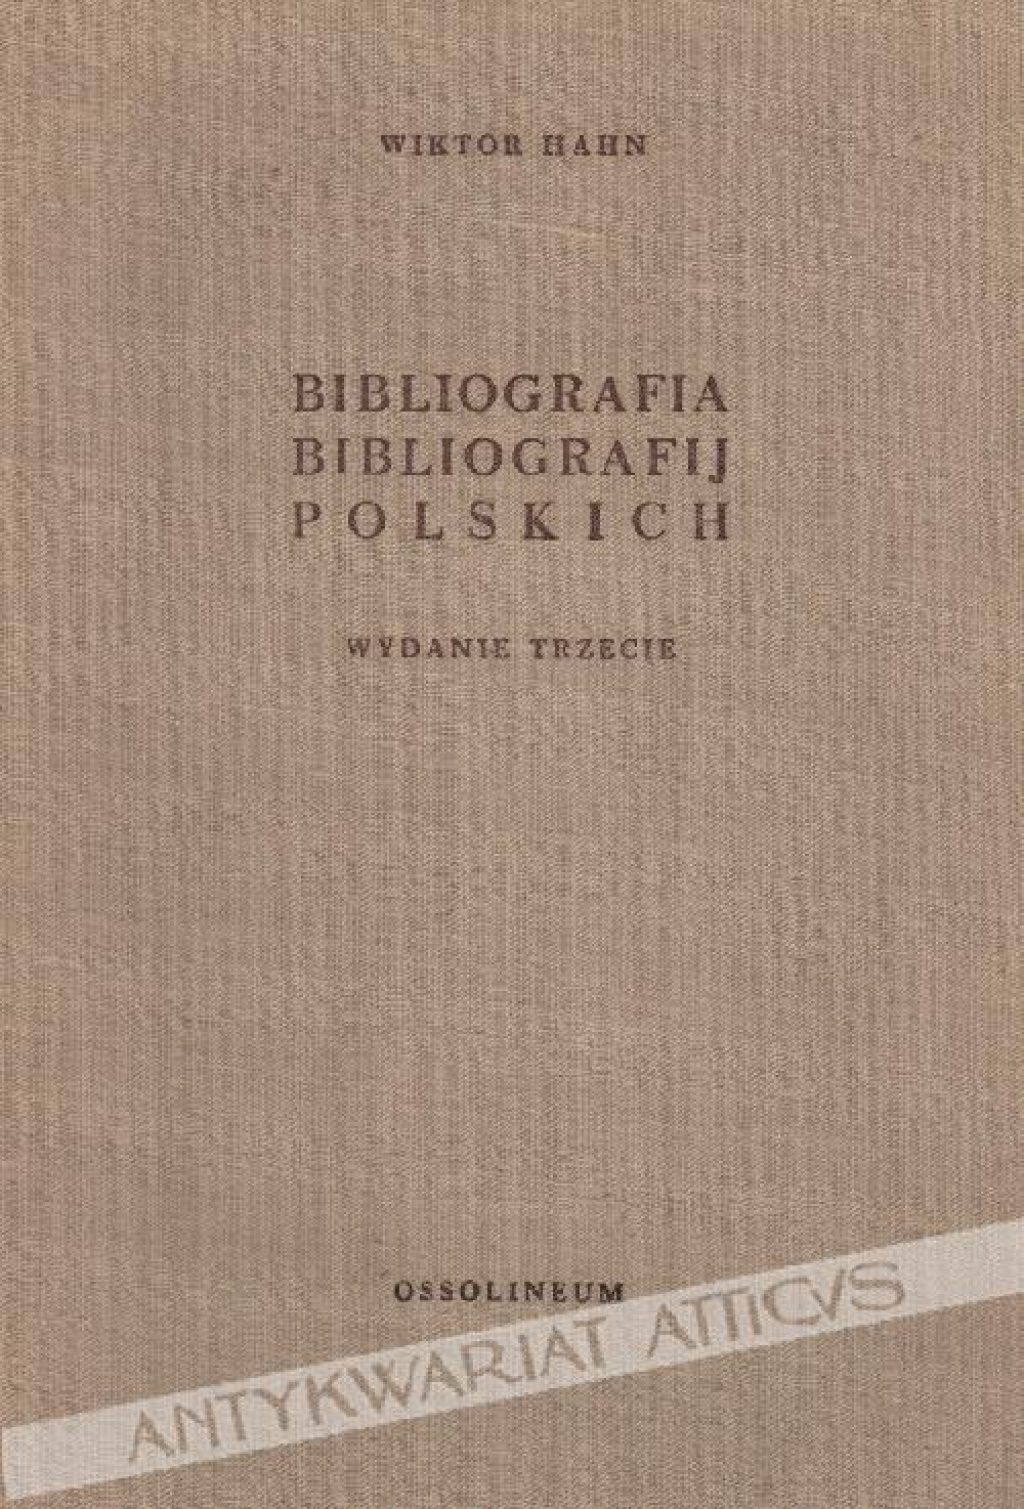 Bibliografia bibliografij polskich do 1950 roku